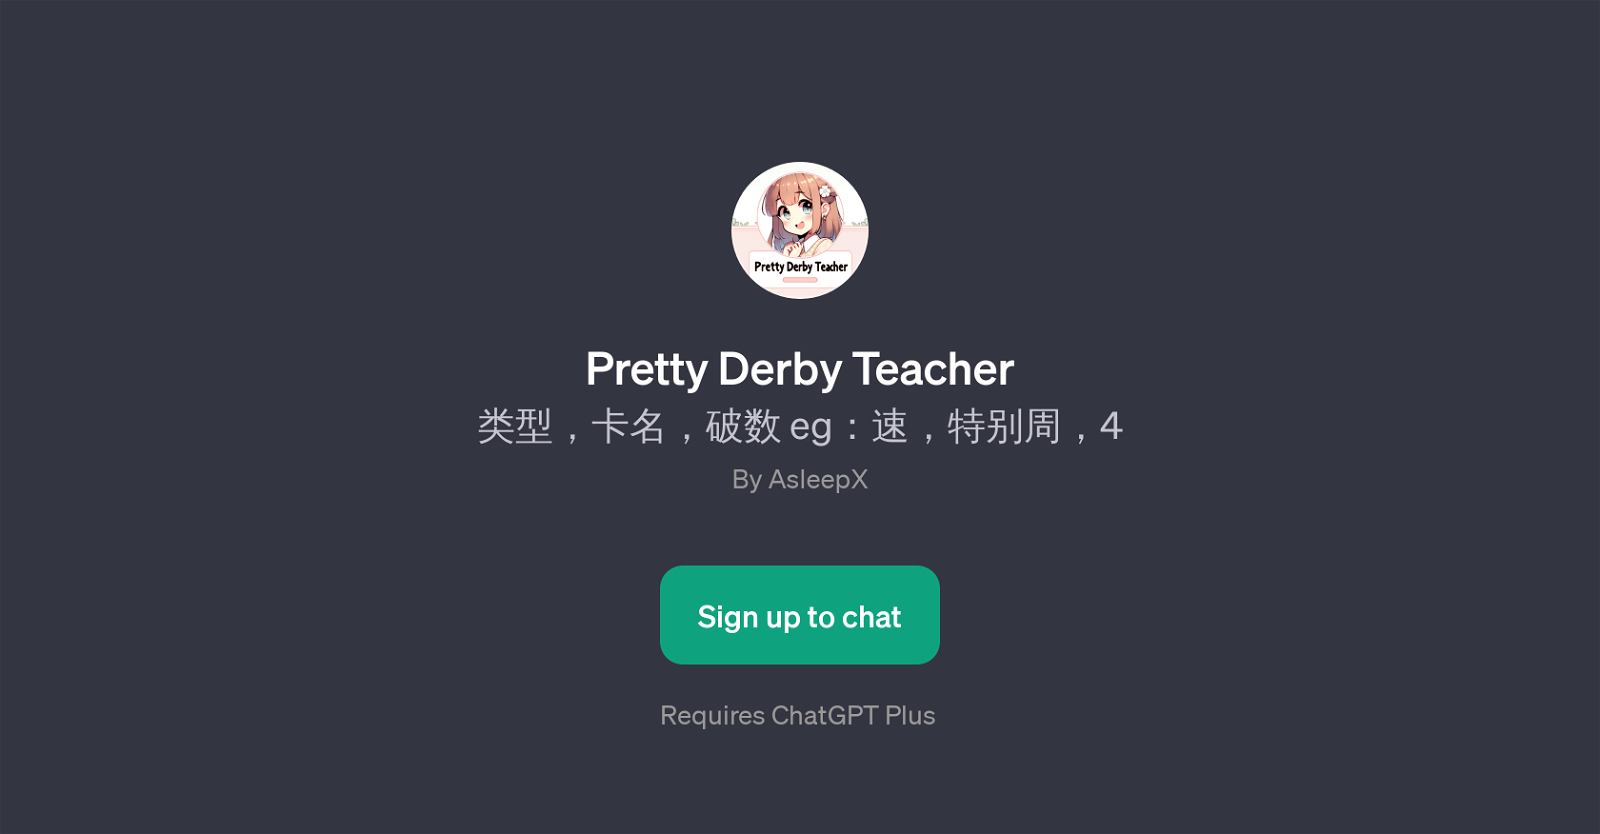 Pretty Derby Teacher website